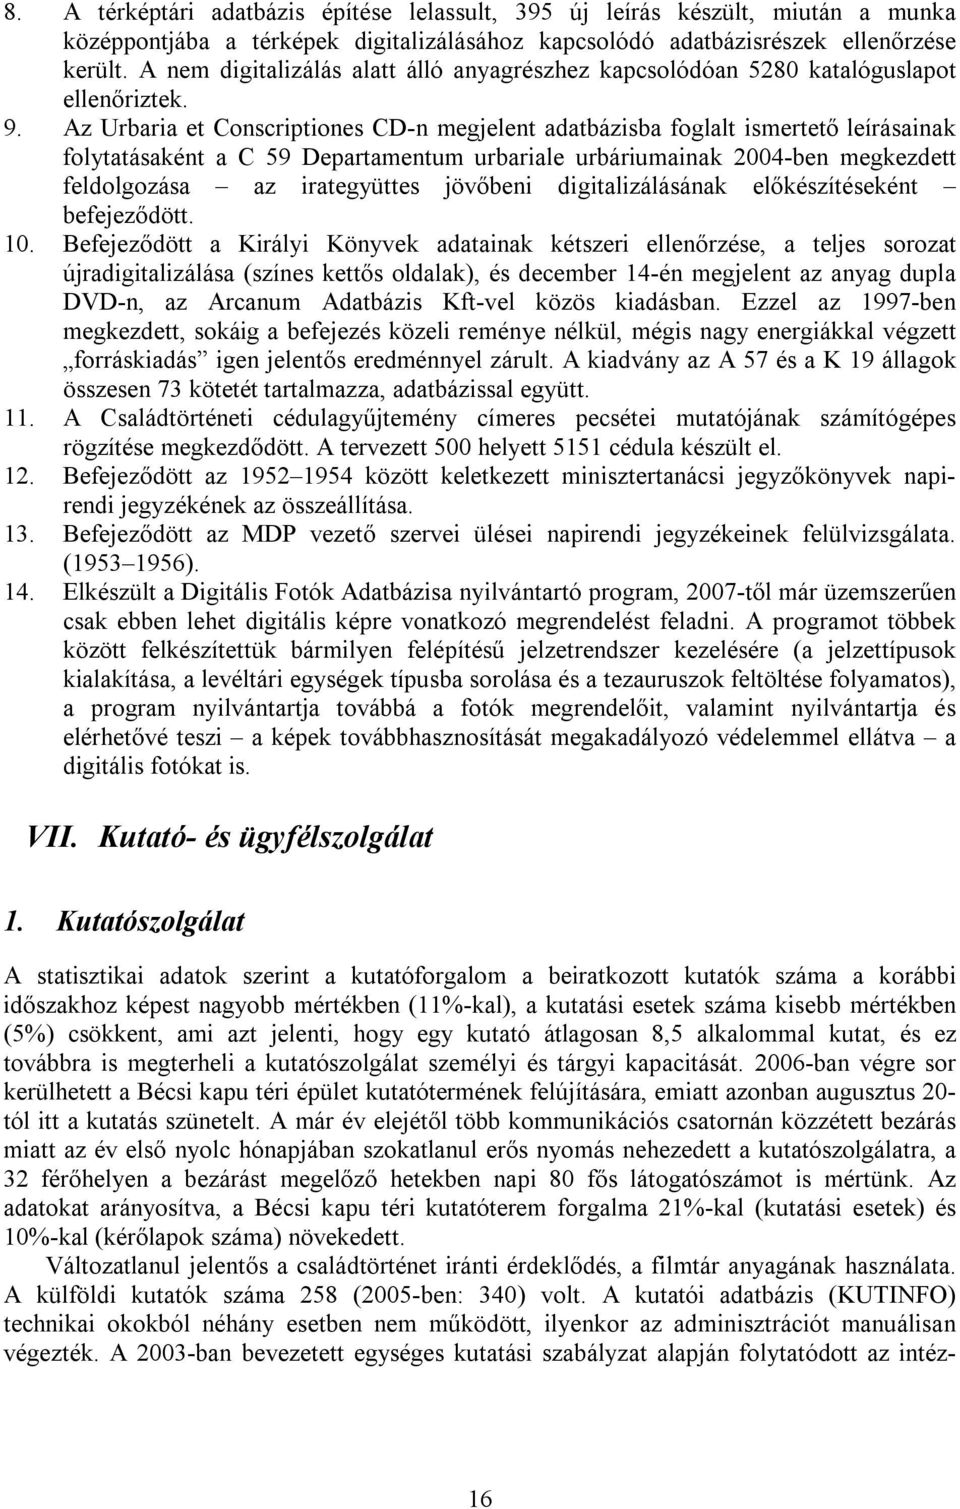 Az Urbaria et Conscriptiones CD-n megjelent adatbázisba foglalt ismertető leírásainak folytatásaként a C 59 Departamentum urbariale urbáriumainak 2004-ben megkezdett feldolgozása az irategyüttes